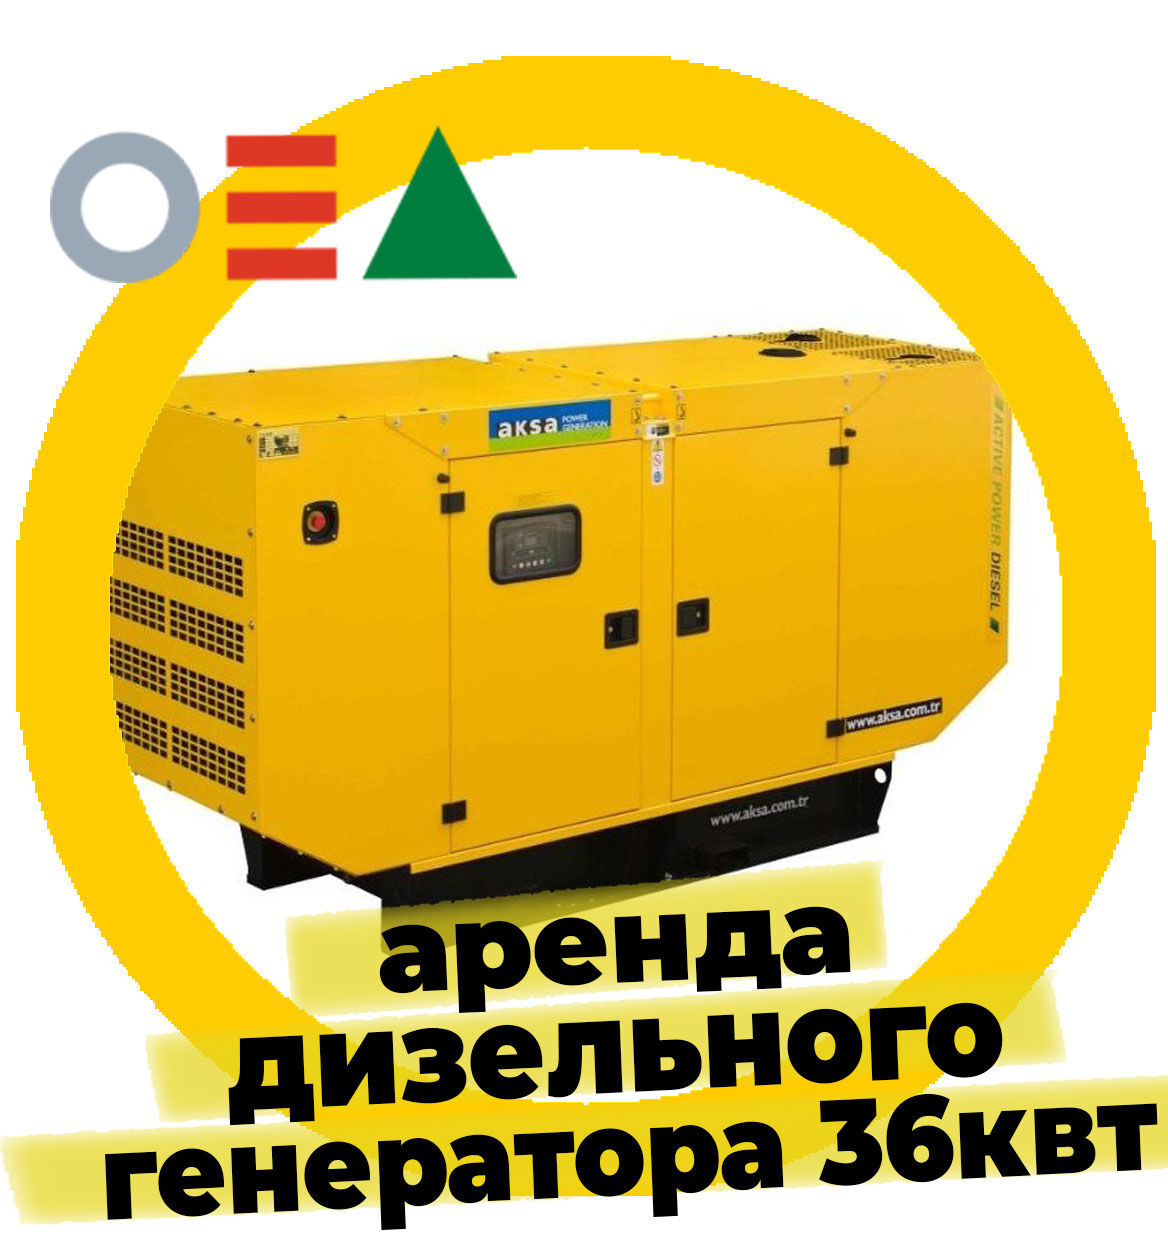 Дизельный генератор Aksa APD50A 36кВт АРЕНДА